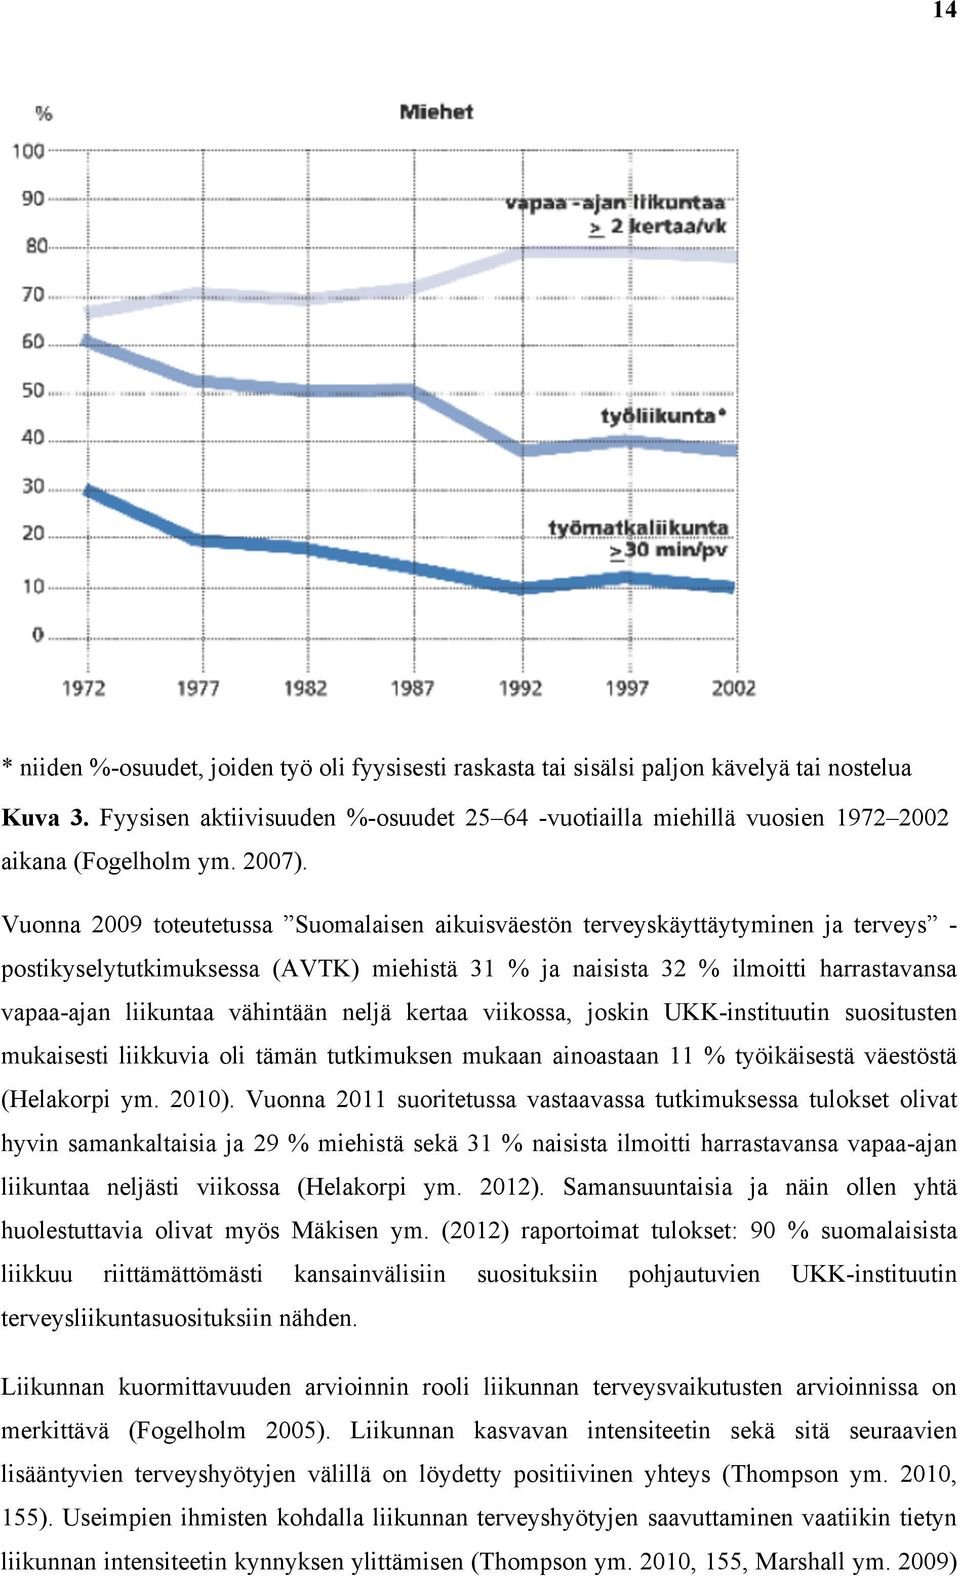 Vuonna 2009 toteutetussa Suomalaisen aikuisväestön terveyskäyttäytyminen ja terveys - postikyselytutkimuksessa (AVTK) miehistä 31 % ja naisista 32 % ilmoitti harrastavansa vapaa-ajan liikuntaa